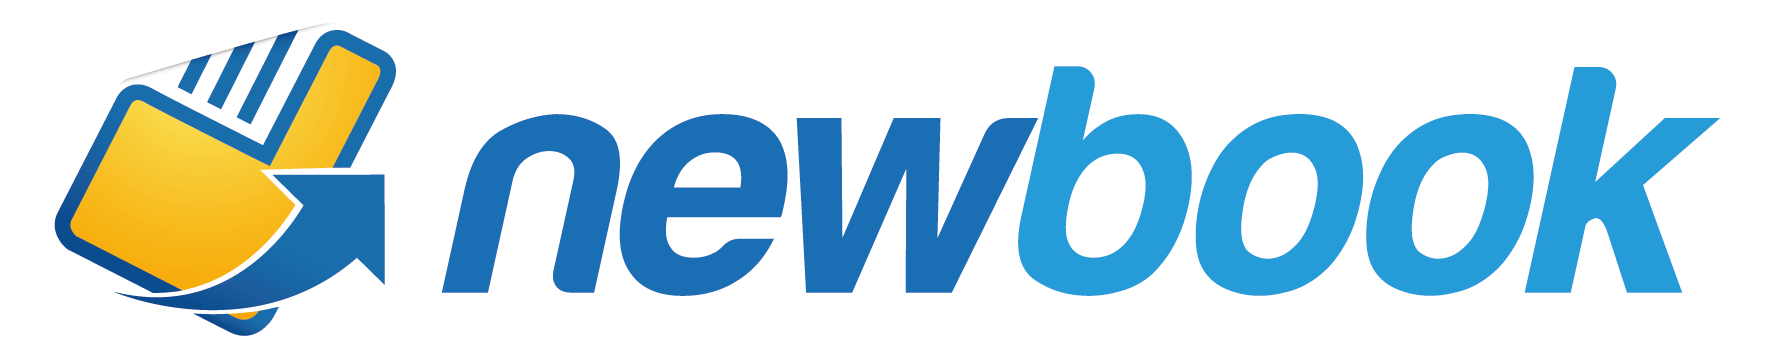 NewBook logo